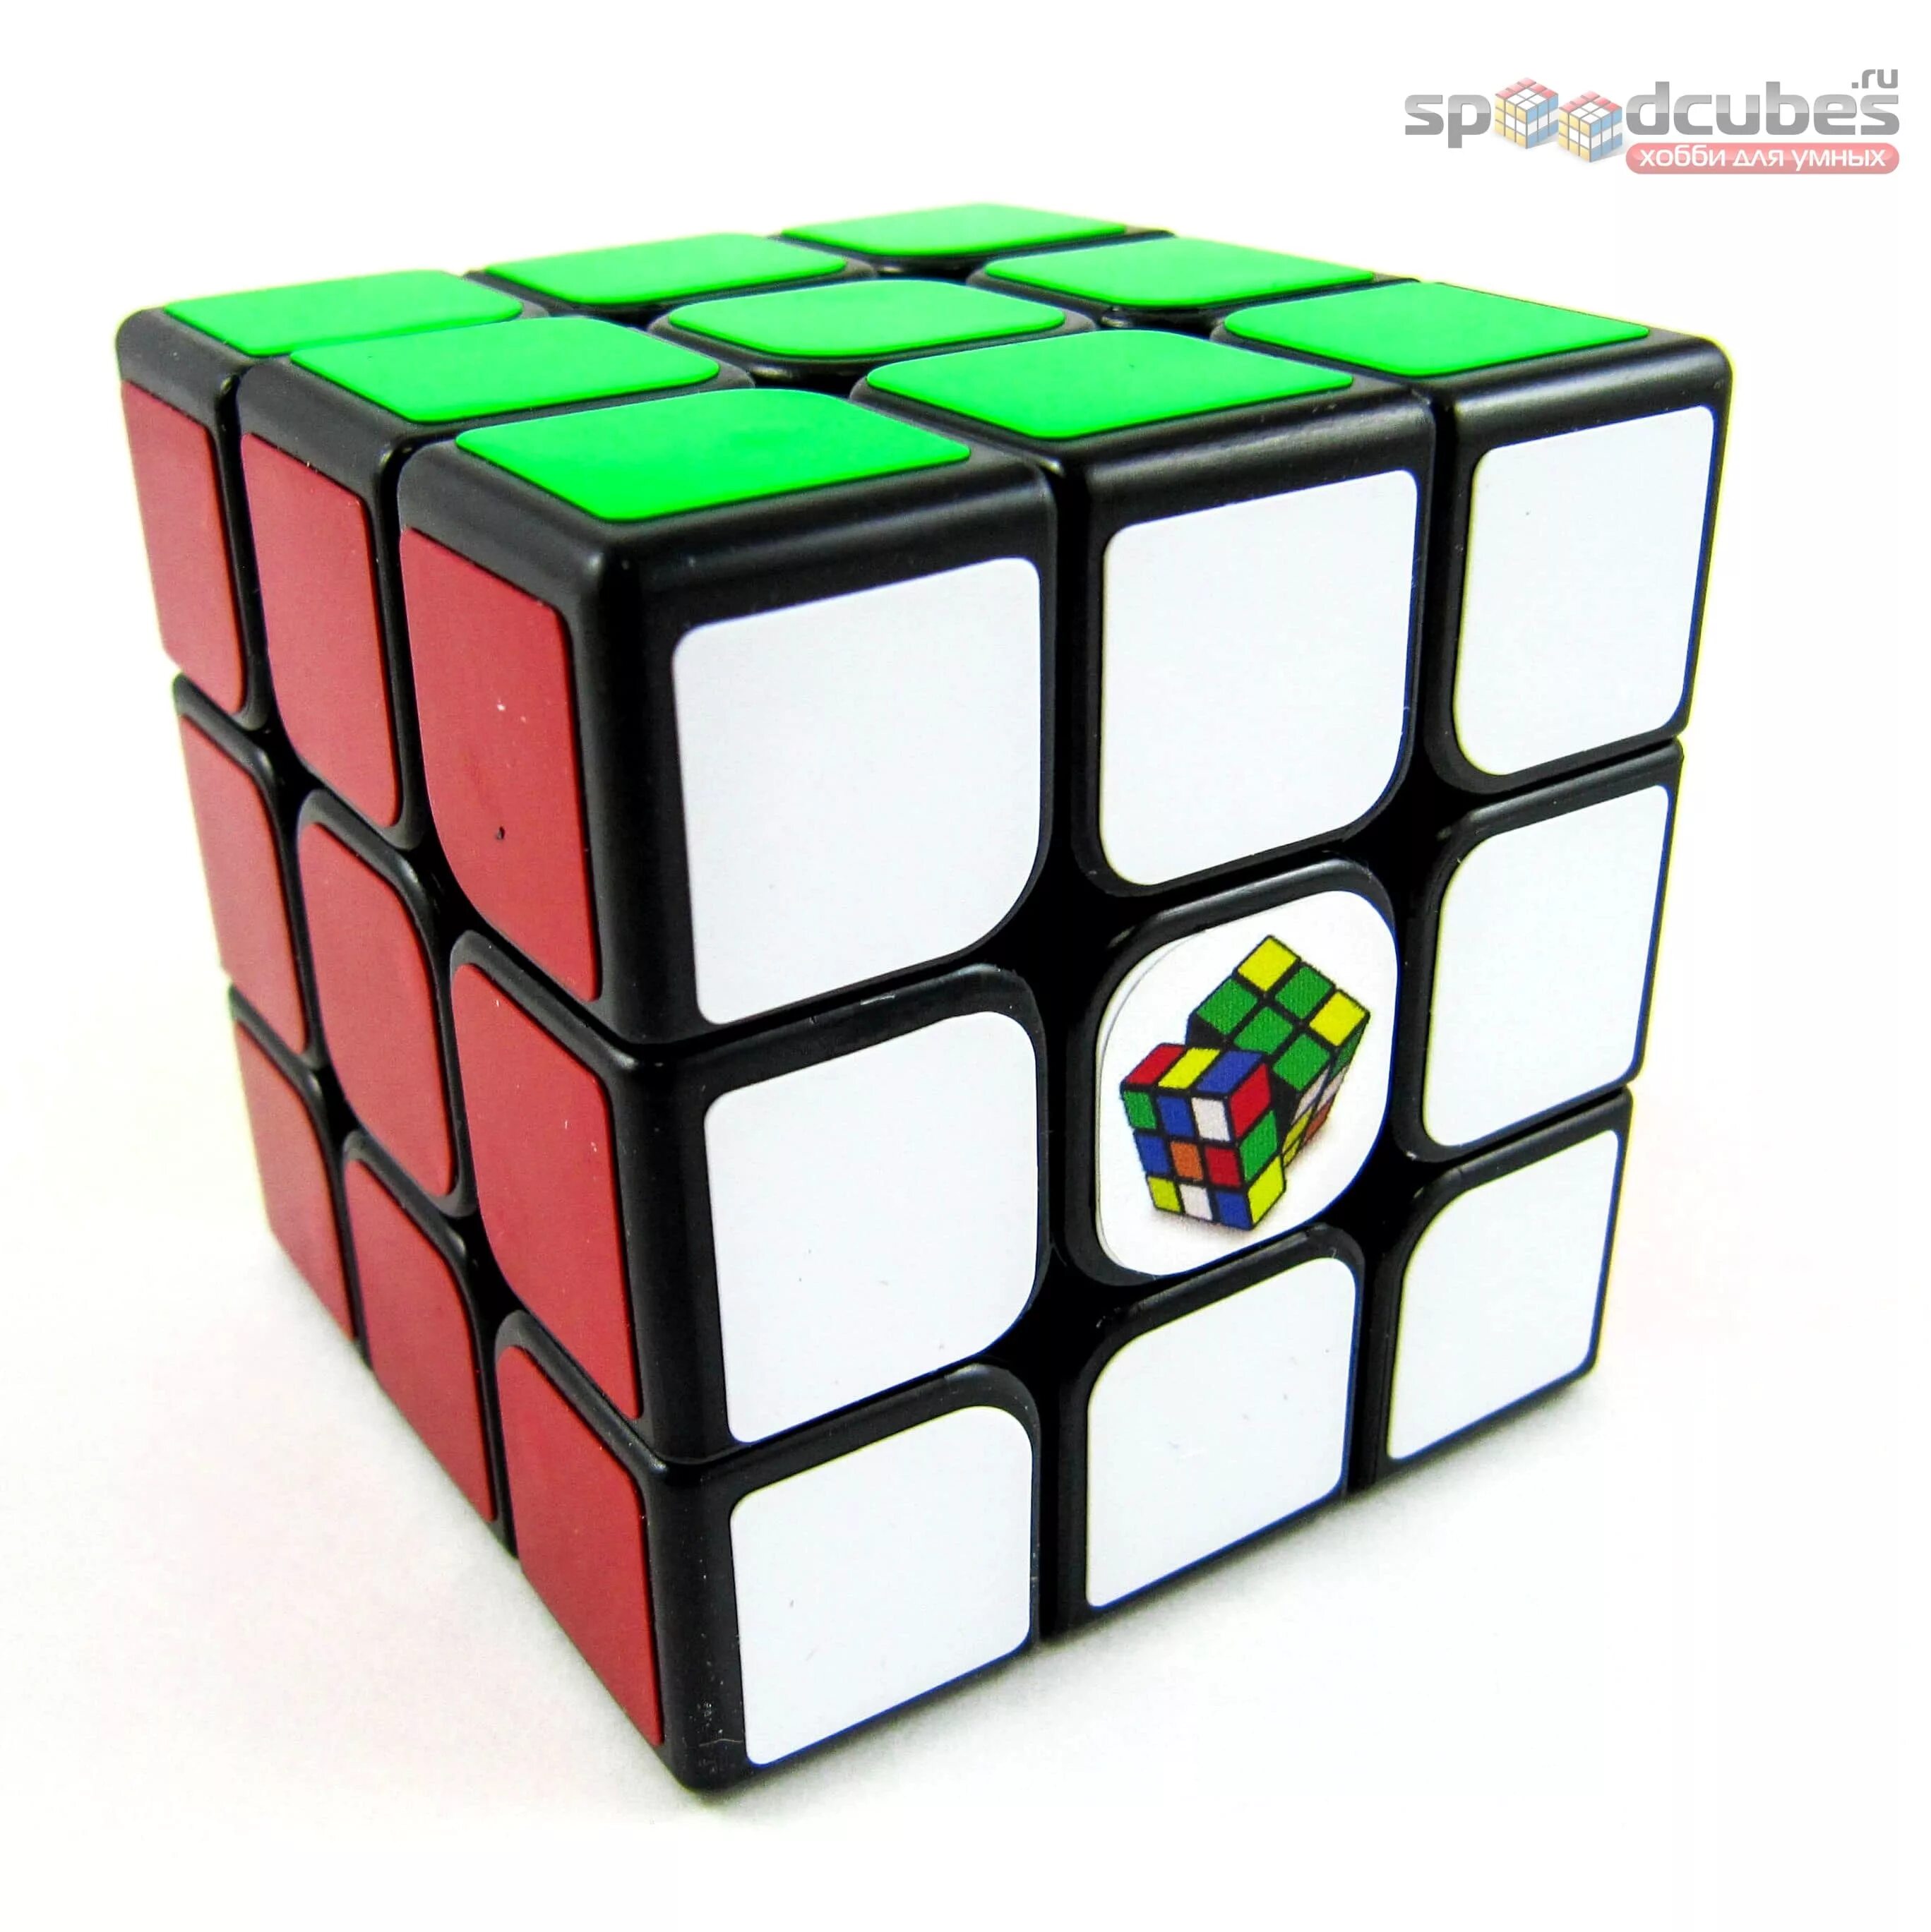 Кубик Рубика 3х3х3. Головоломка MOYU 3x3x3 Guanlong с наклейками. Головоломка MOYU 5x5x5 Cubing Classroom (MOFANGJIAOSHI) mf5 с наклейками. Кубик рубик 20 на 20. Купить куб в хабаровске